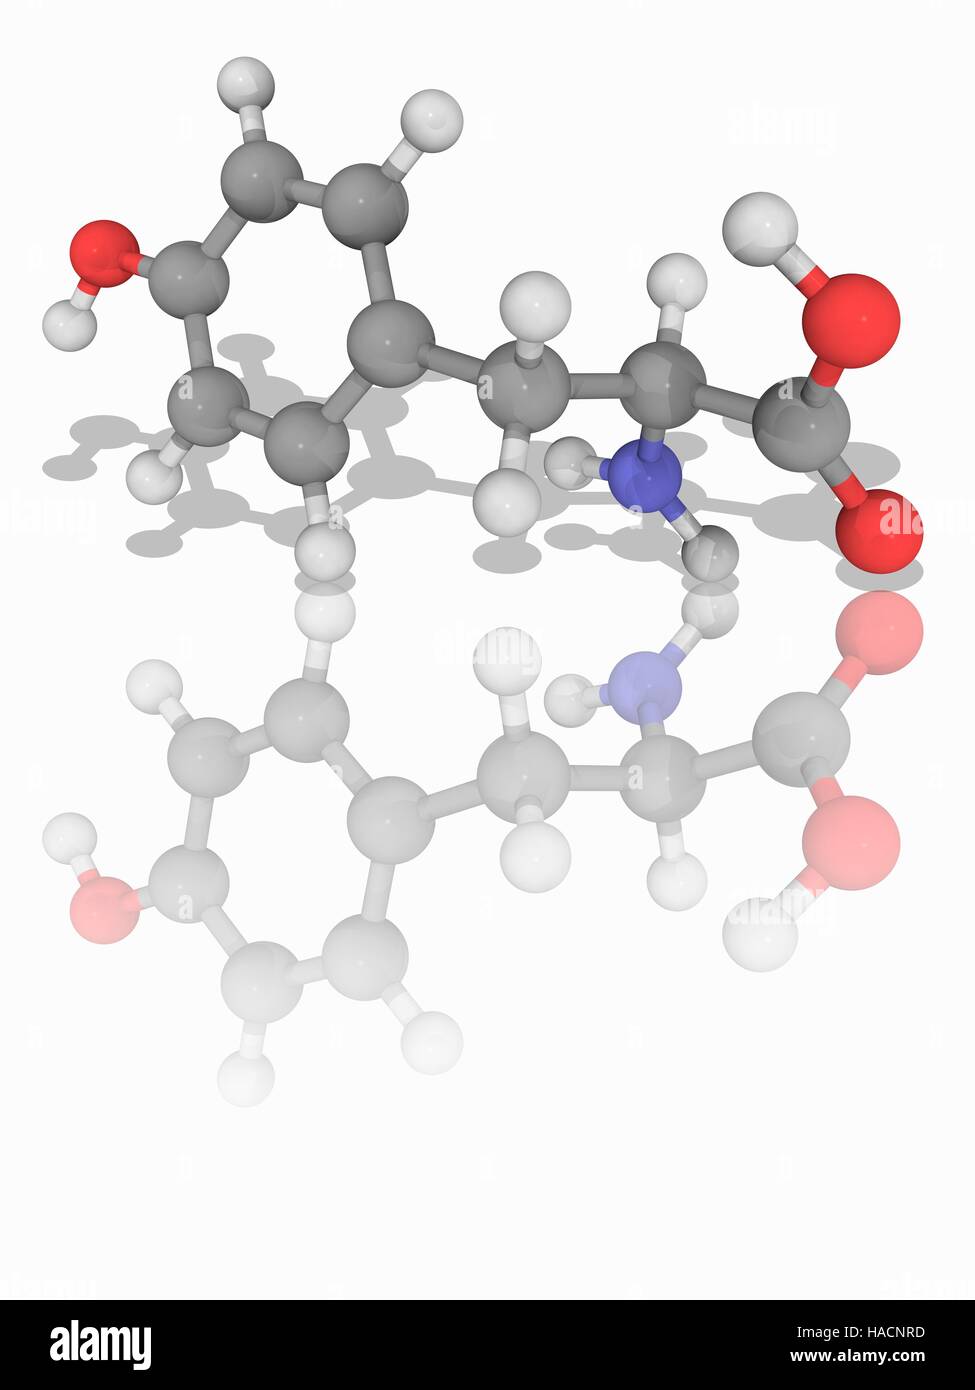 Tyrosin. Molekulares Modell des nicht-essentielle Aminosäure Tyrosin (C9. H11. N.O3), eine der 20 Aminosäuren verwendet, um Proteine (proteinogene) zu synthetisieren. Atome als Kugeln dargestellt werden und sind farblich gekennzeichnet: Kohlenstoff (grau), Wasserstoff (weiß), Stickstoff (blau) und Sauerstoff (rot). Abbildung. Stockfoto